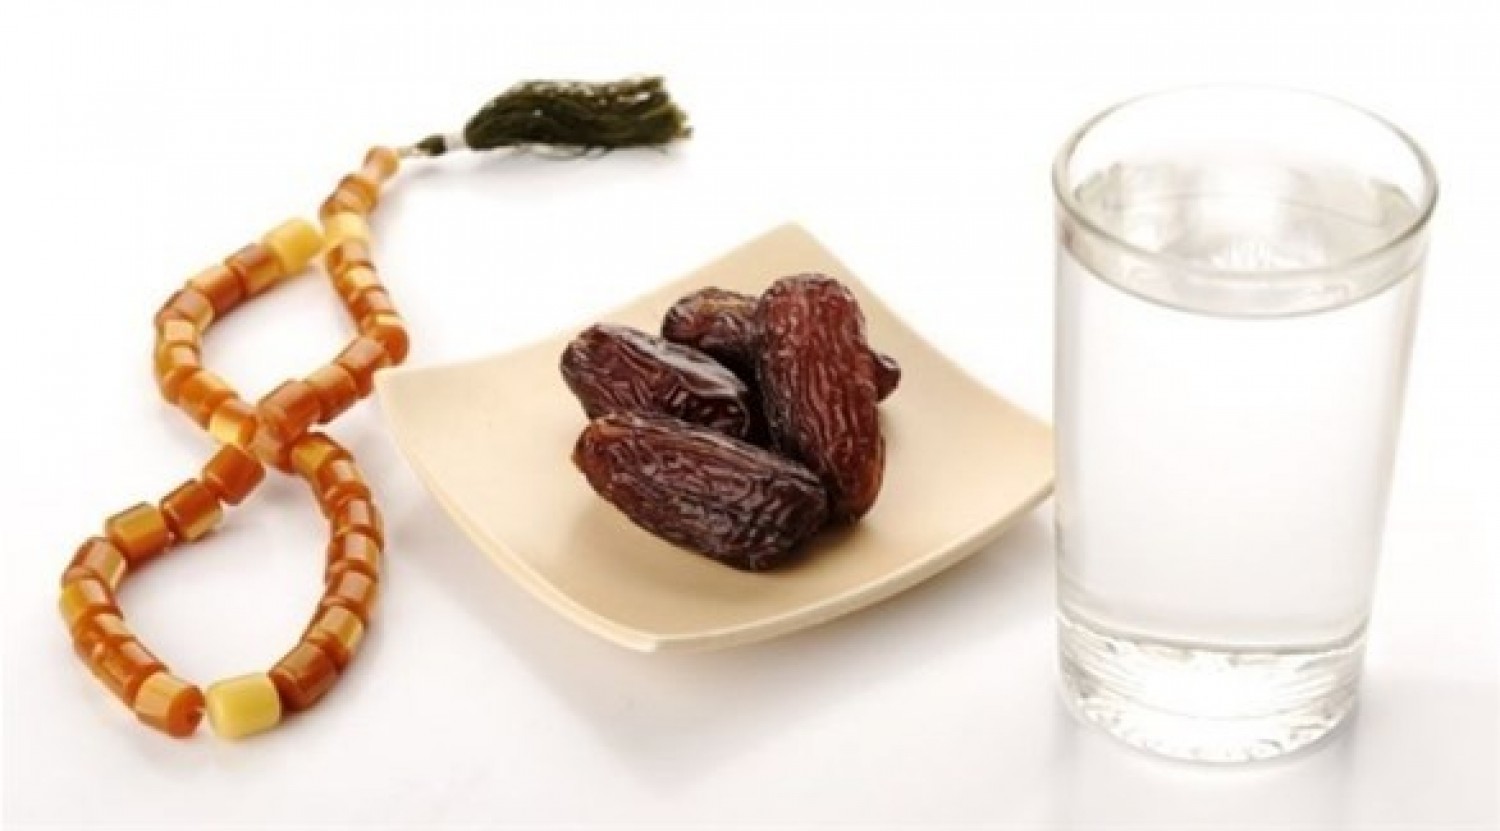 نصائح غذائية لشهر رمضان